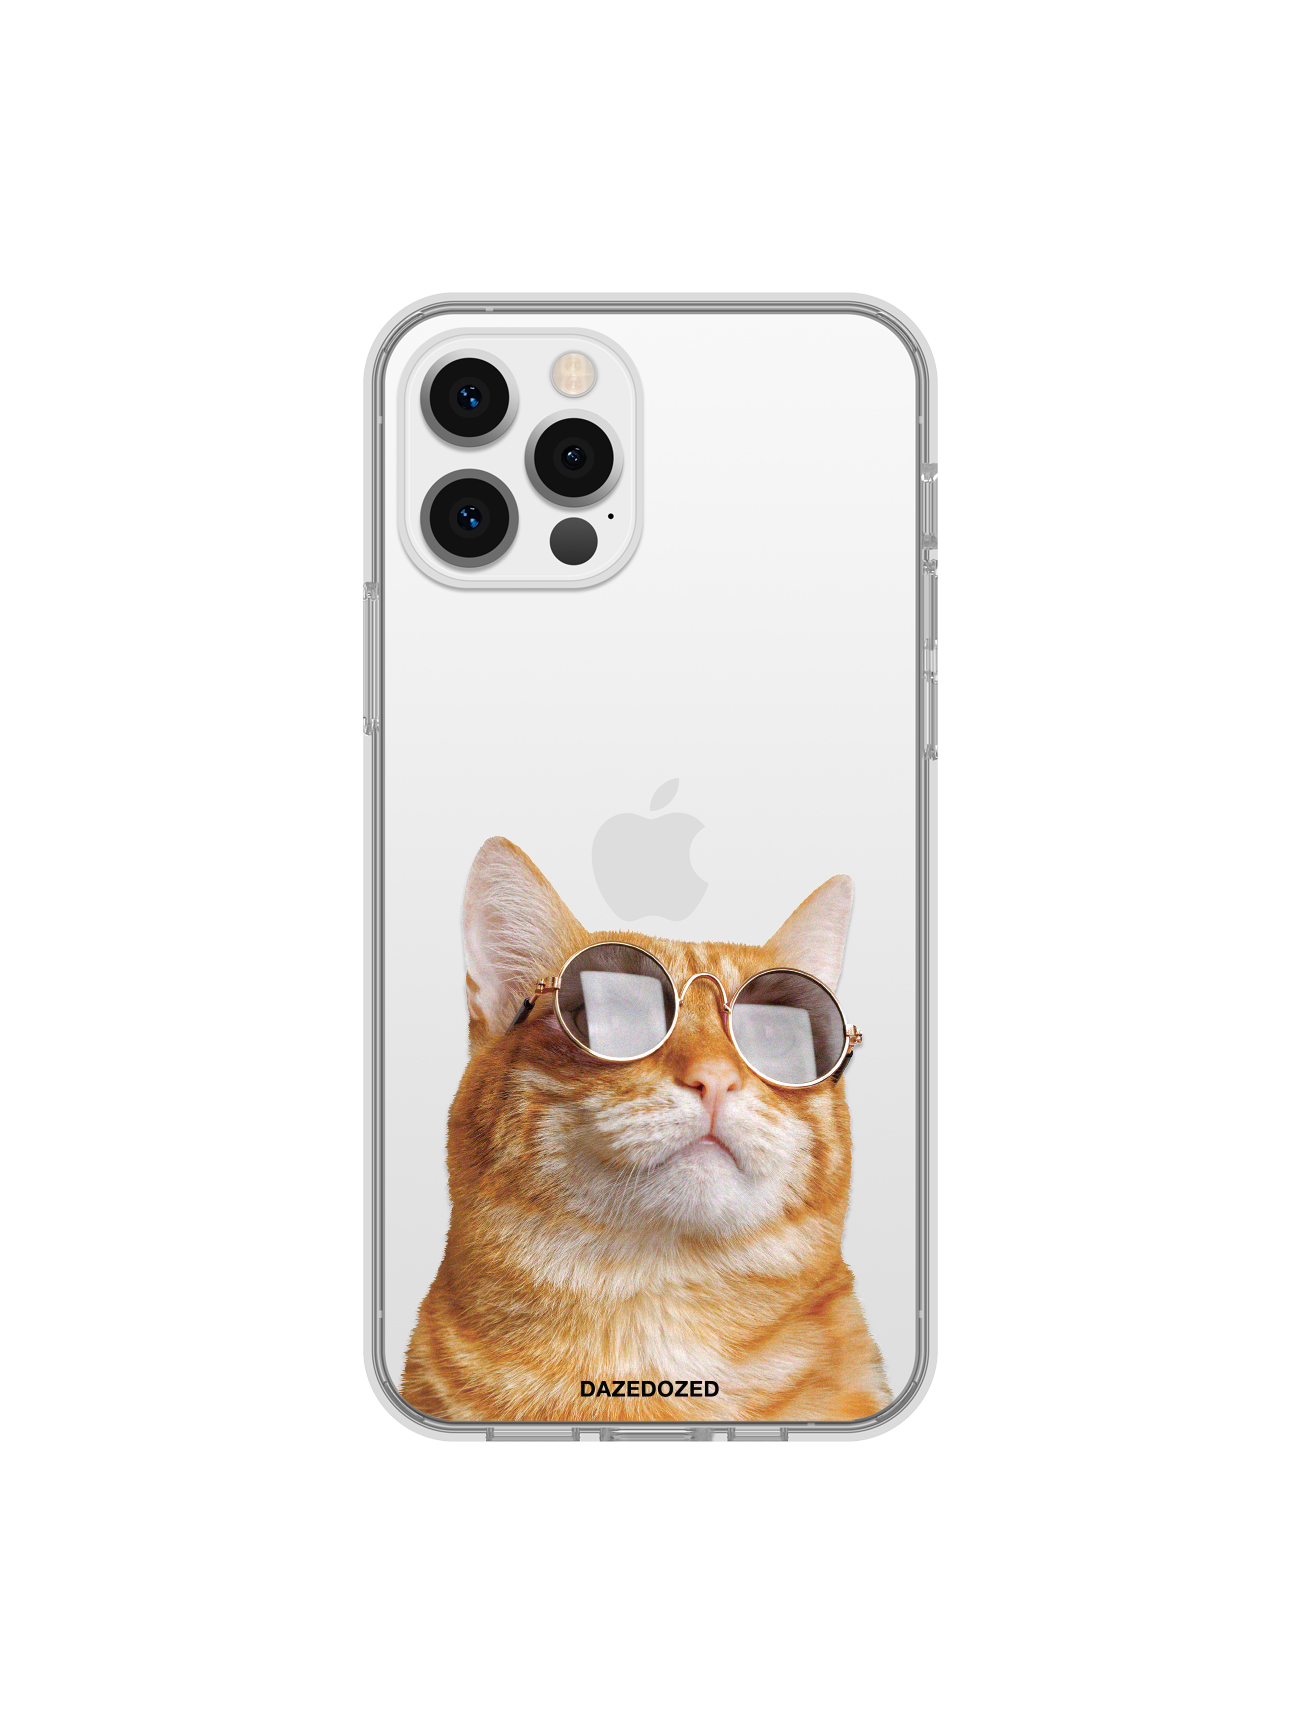 Red Cat In Sunglasses Phone Case